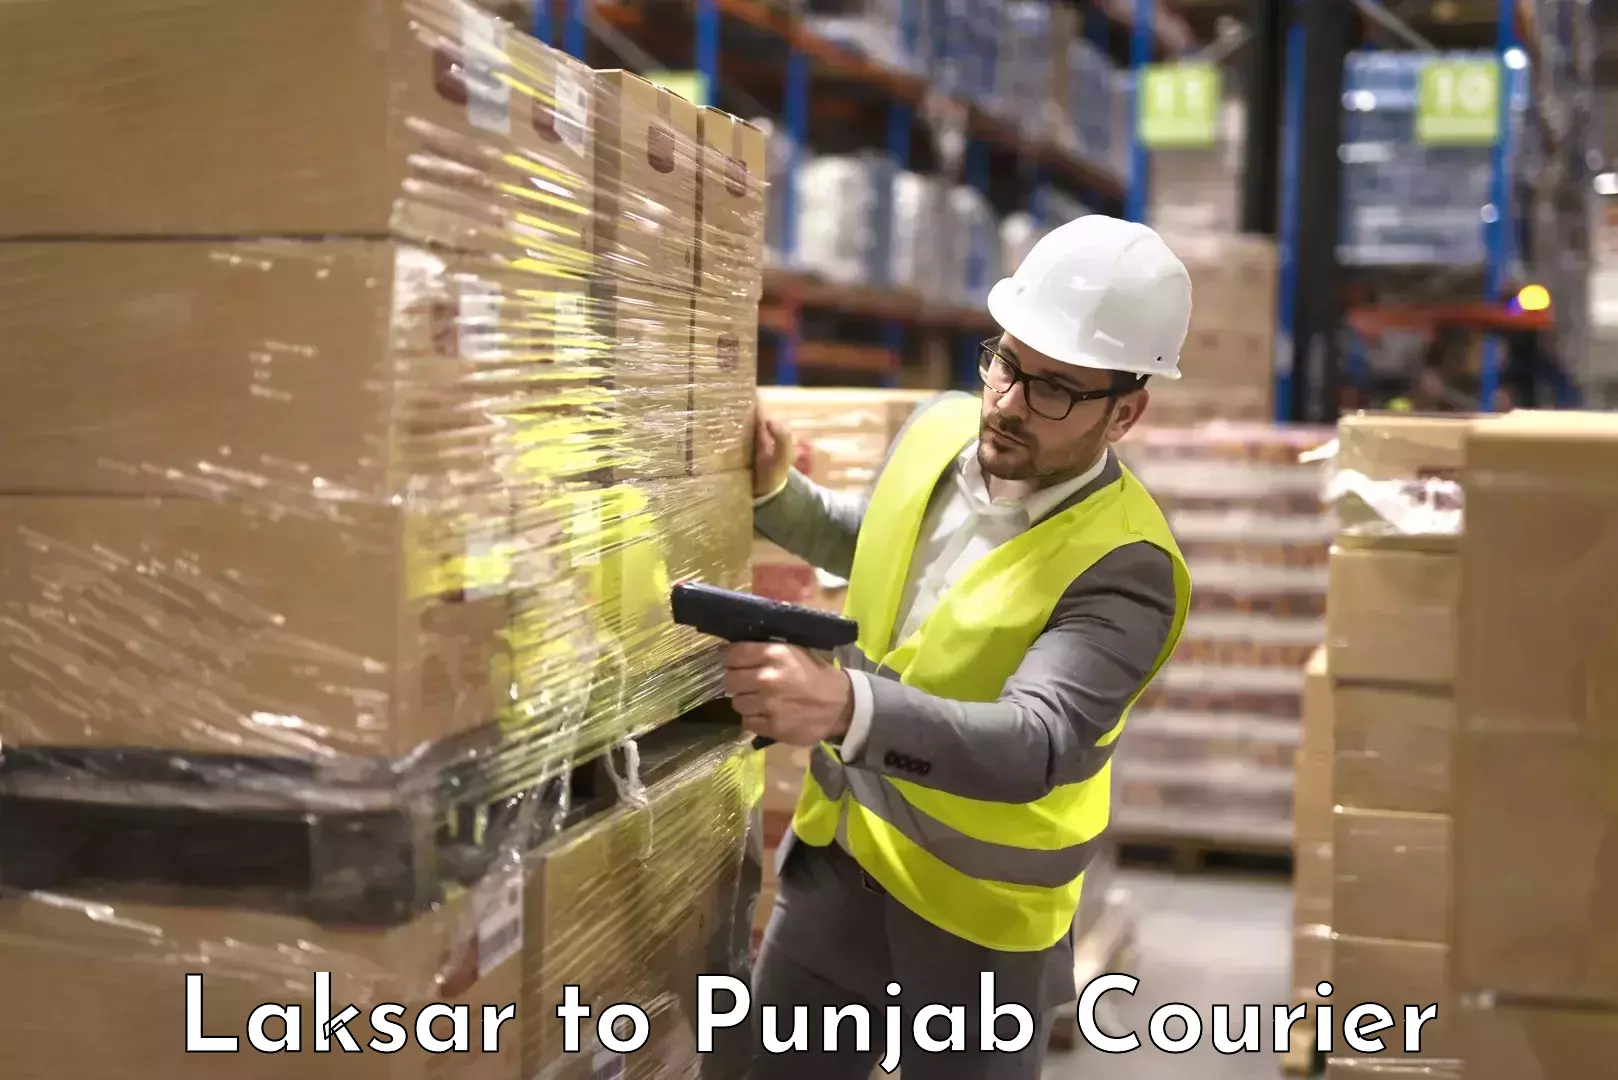 Baggage shipping experts Laksar to Punjab